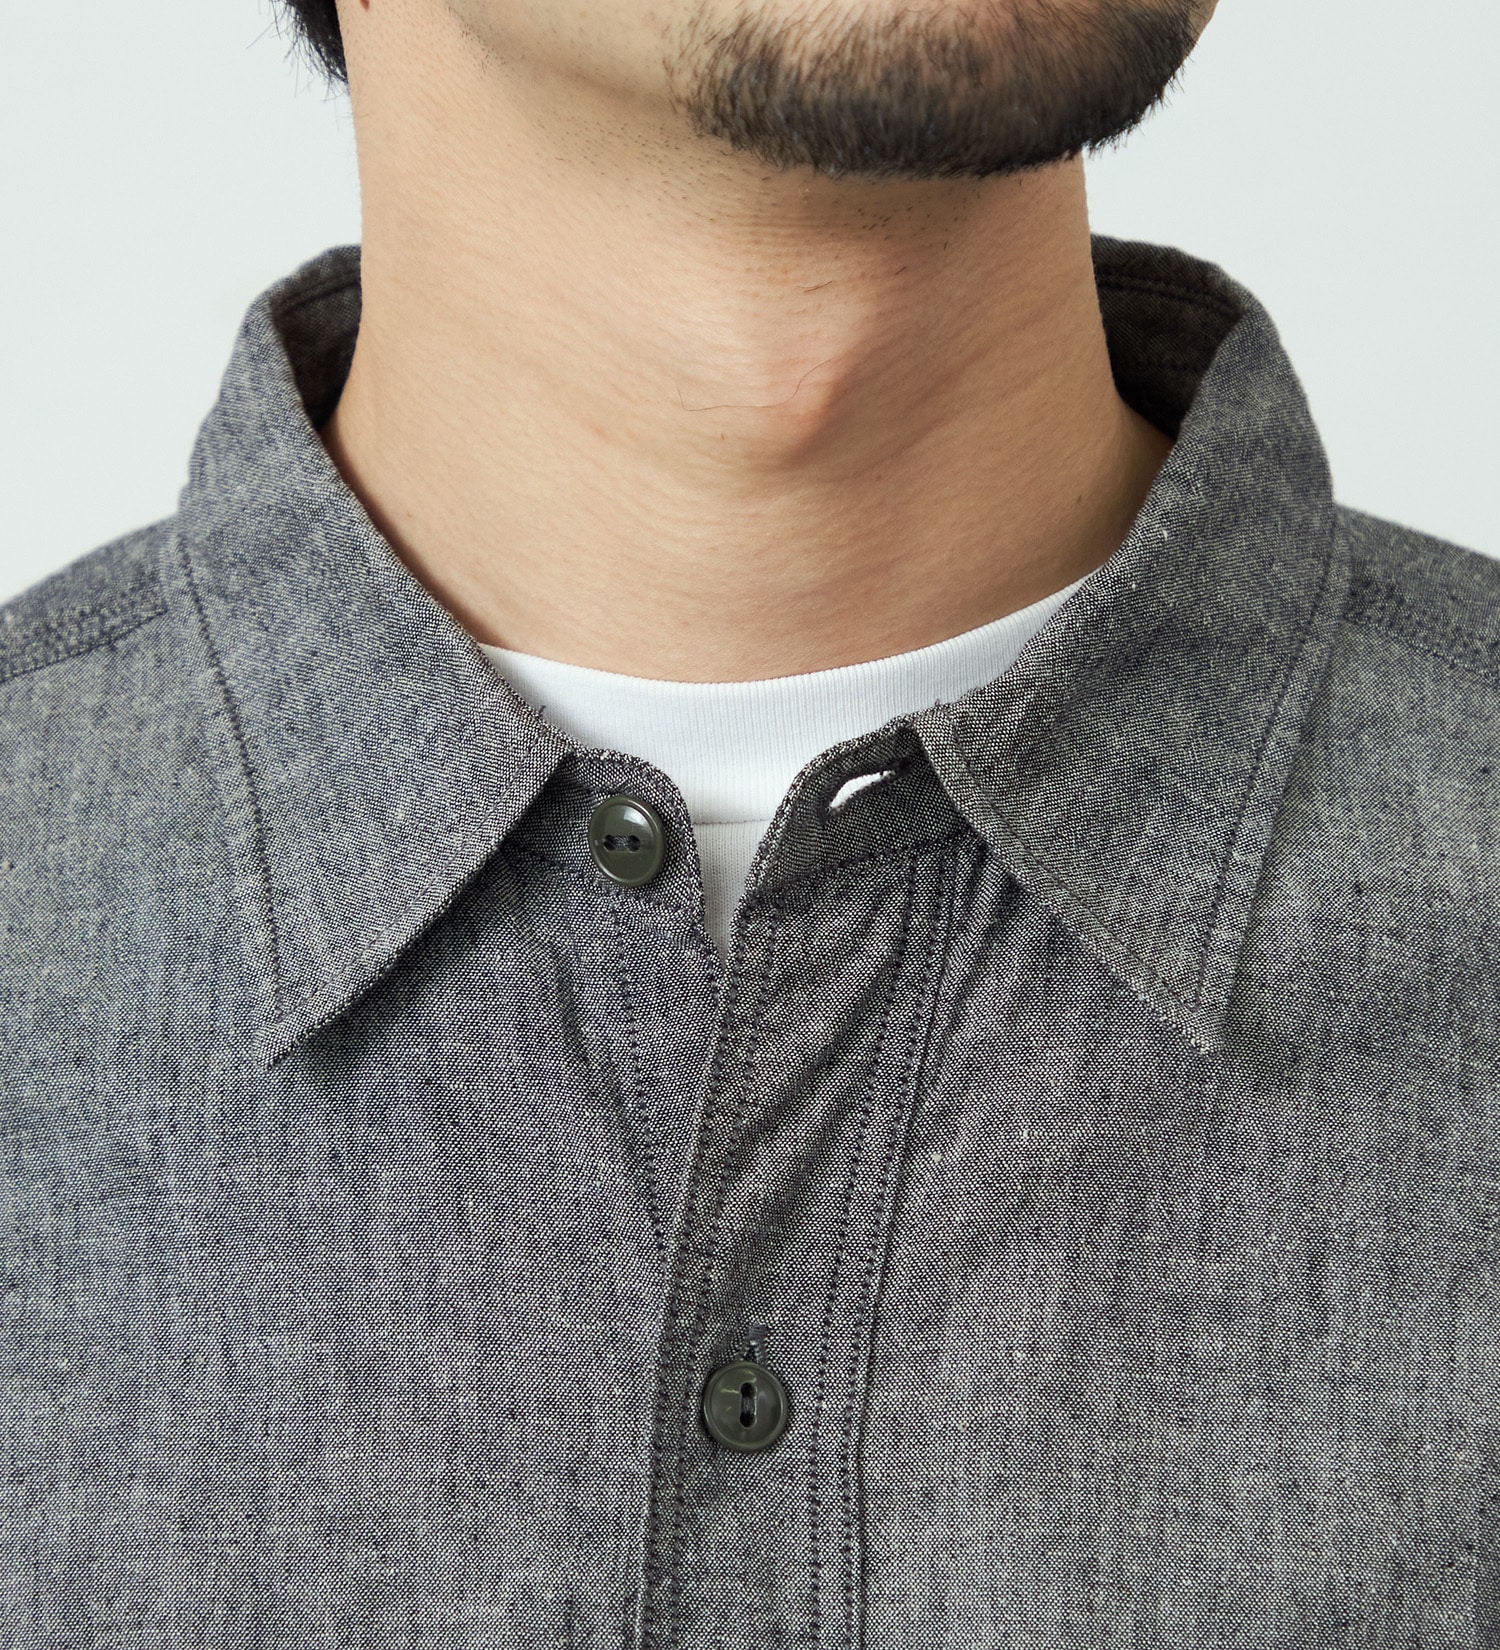 EDWIN(エドウイン)のヴィンテージワークシャツ 長袖|トップス/シャツ/ブラウス/メンズ|ブラック